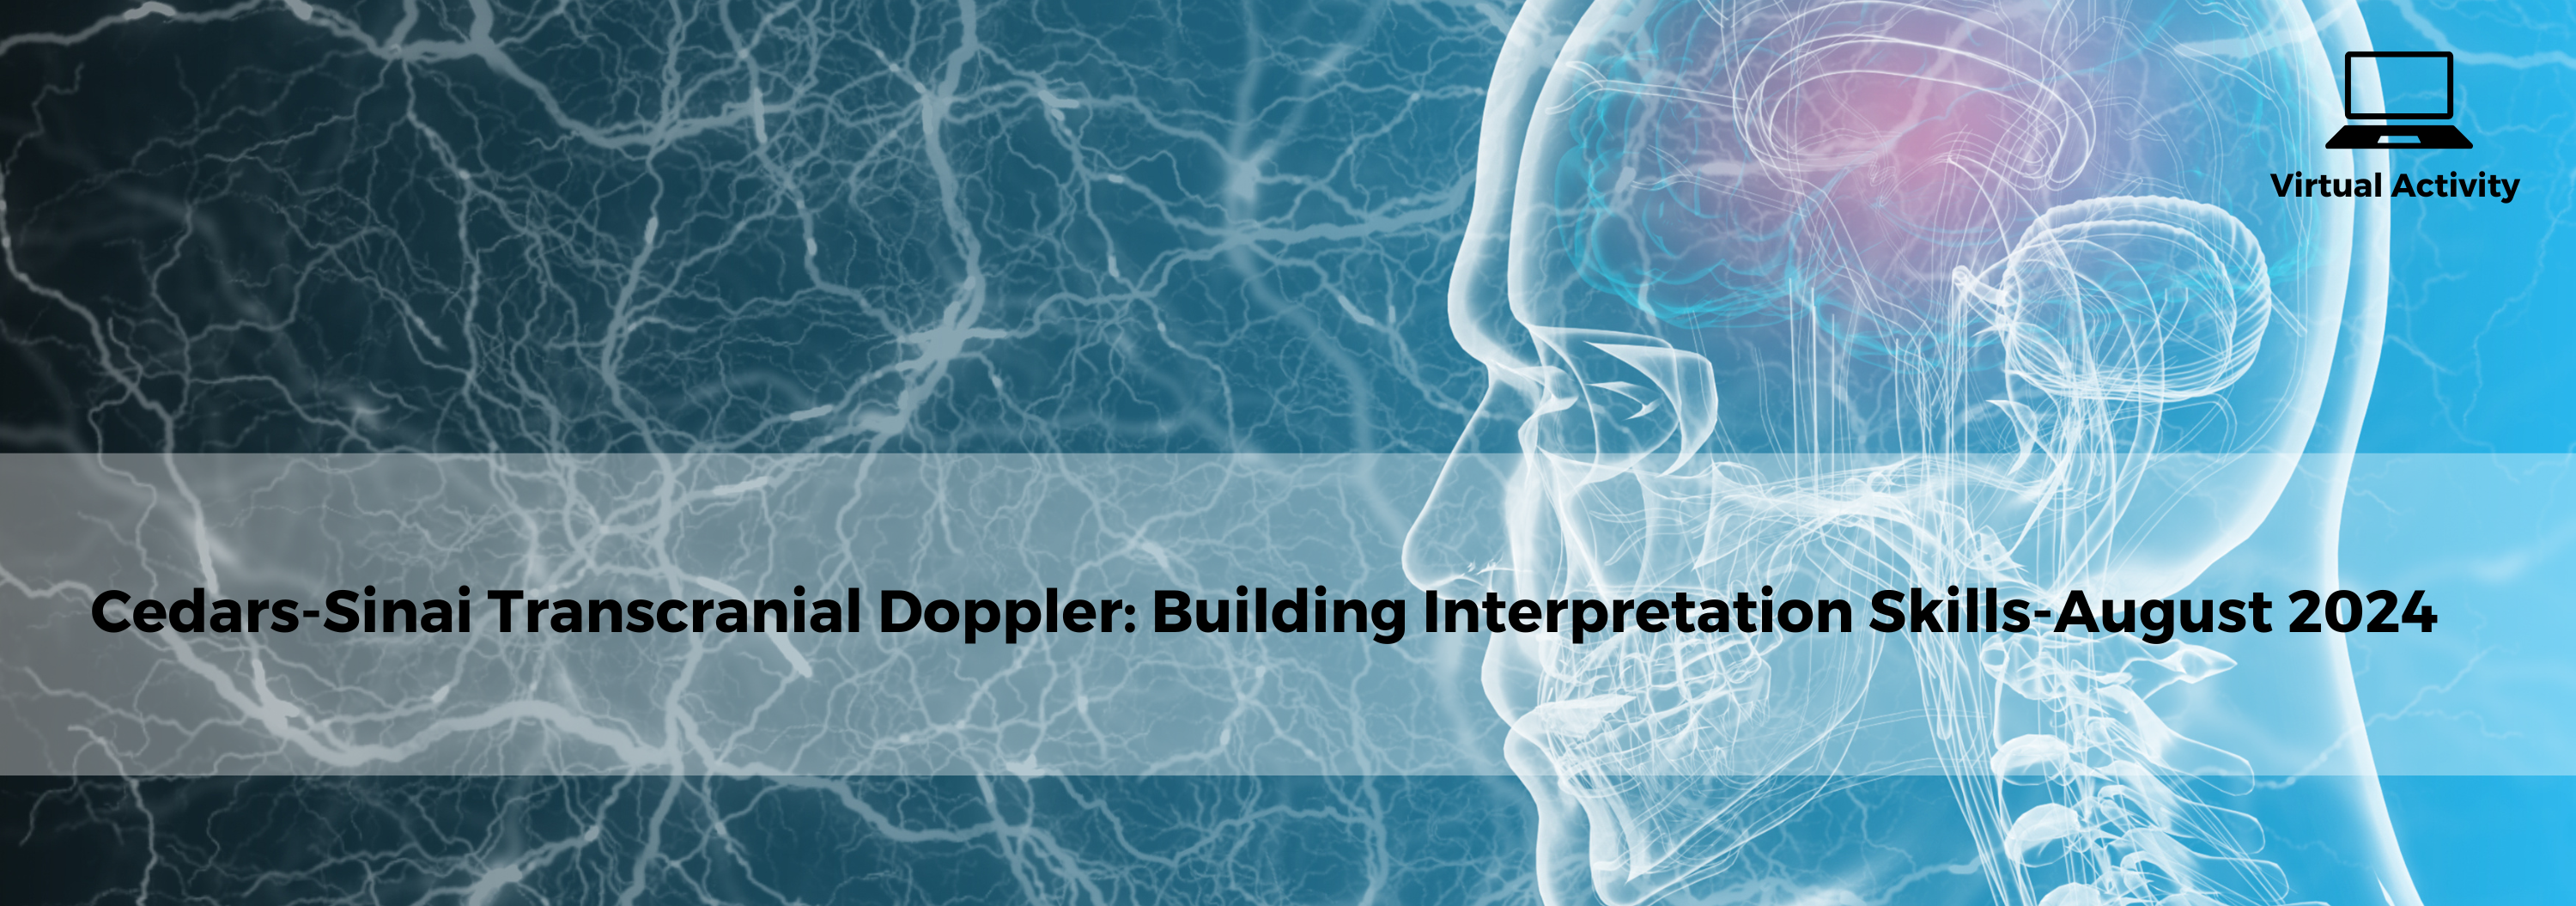 Cedars-Sinai Transcranial Doppler: Building Interpretation Skills-August 2024 Banner